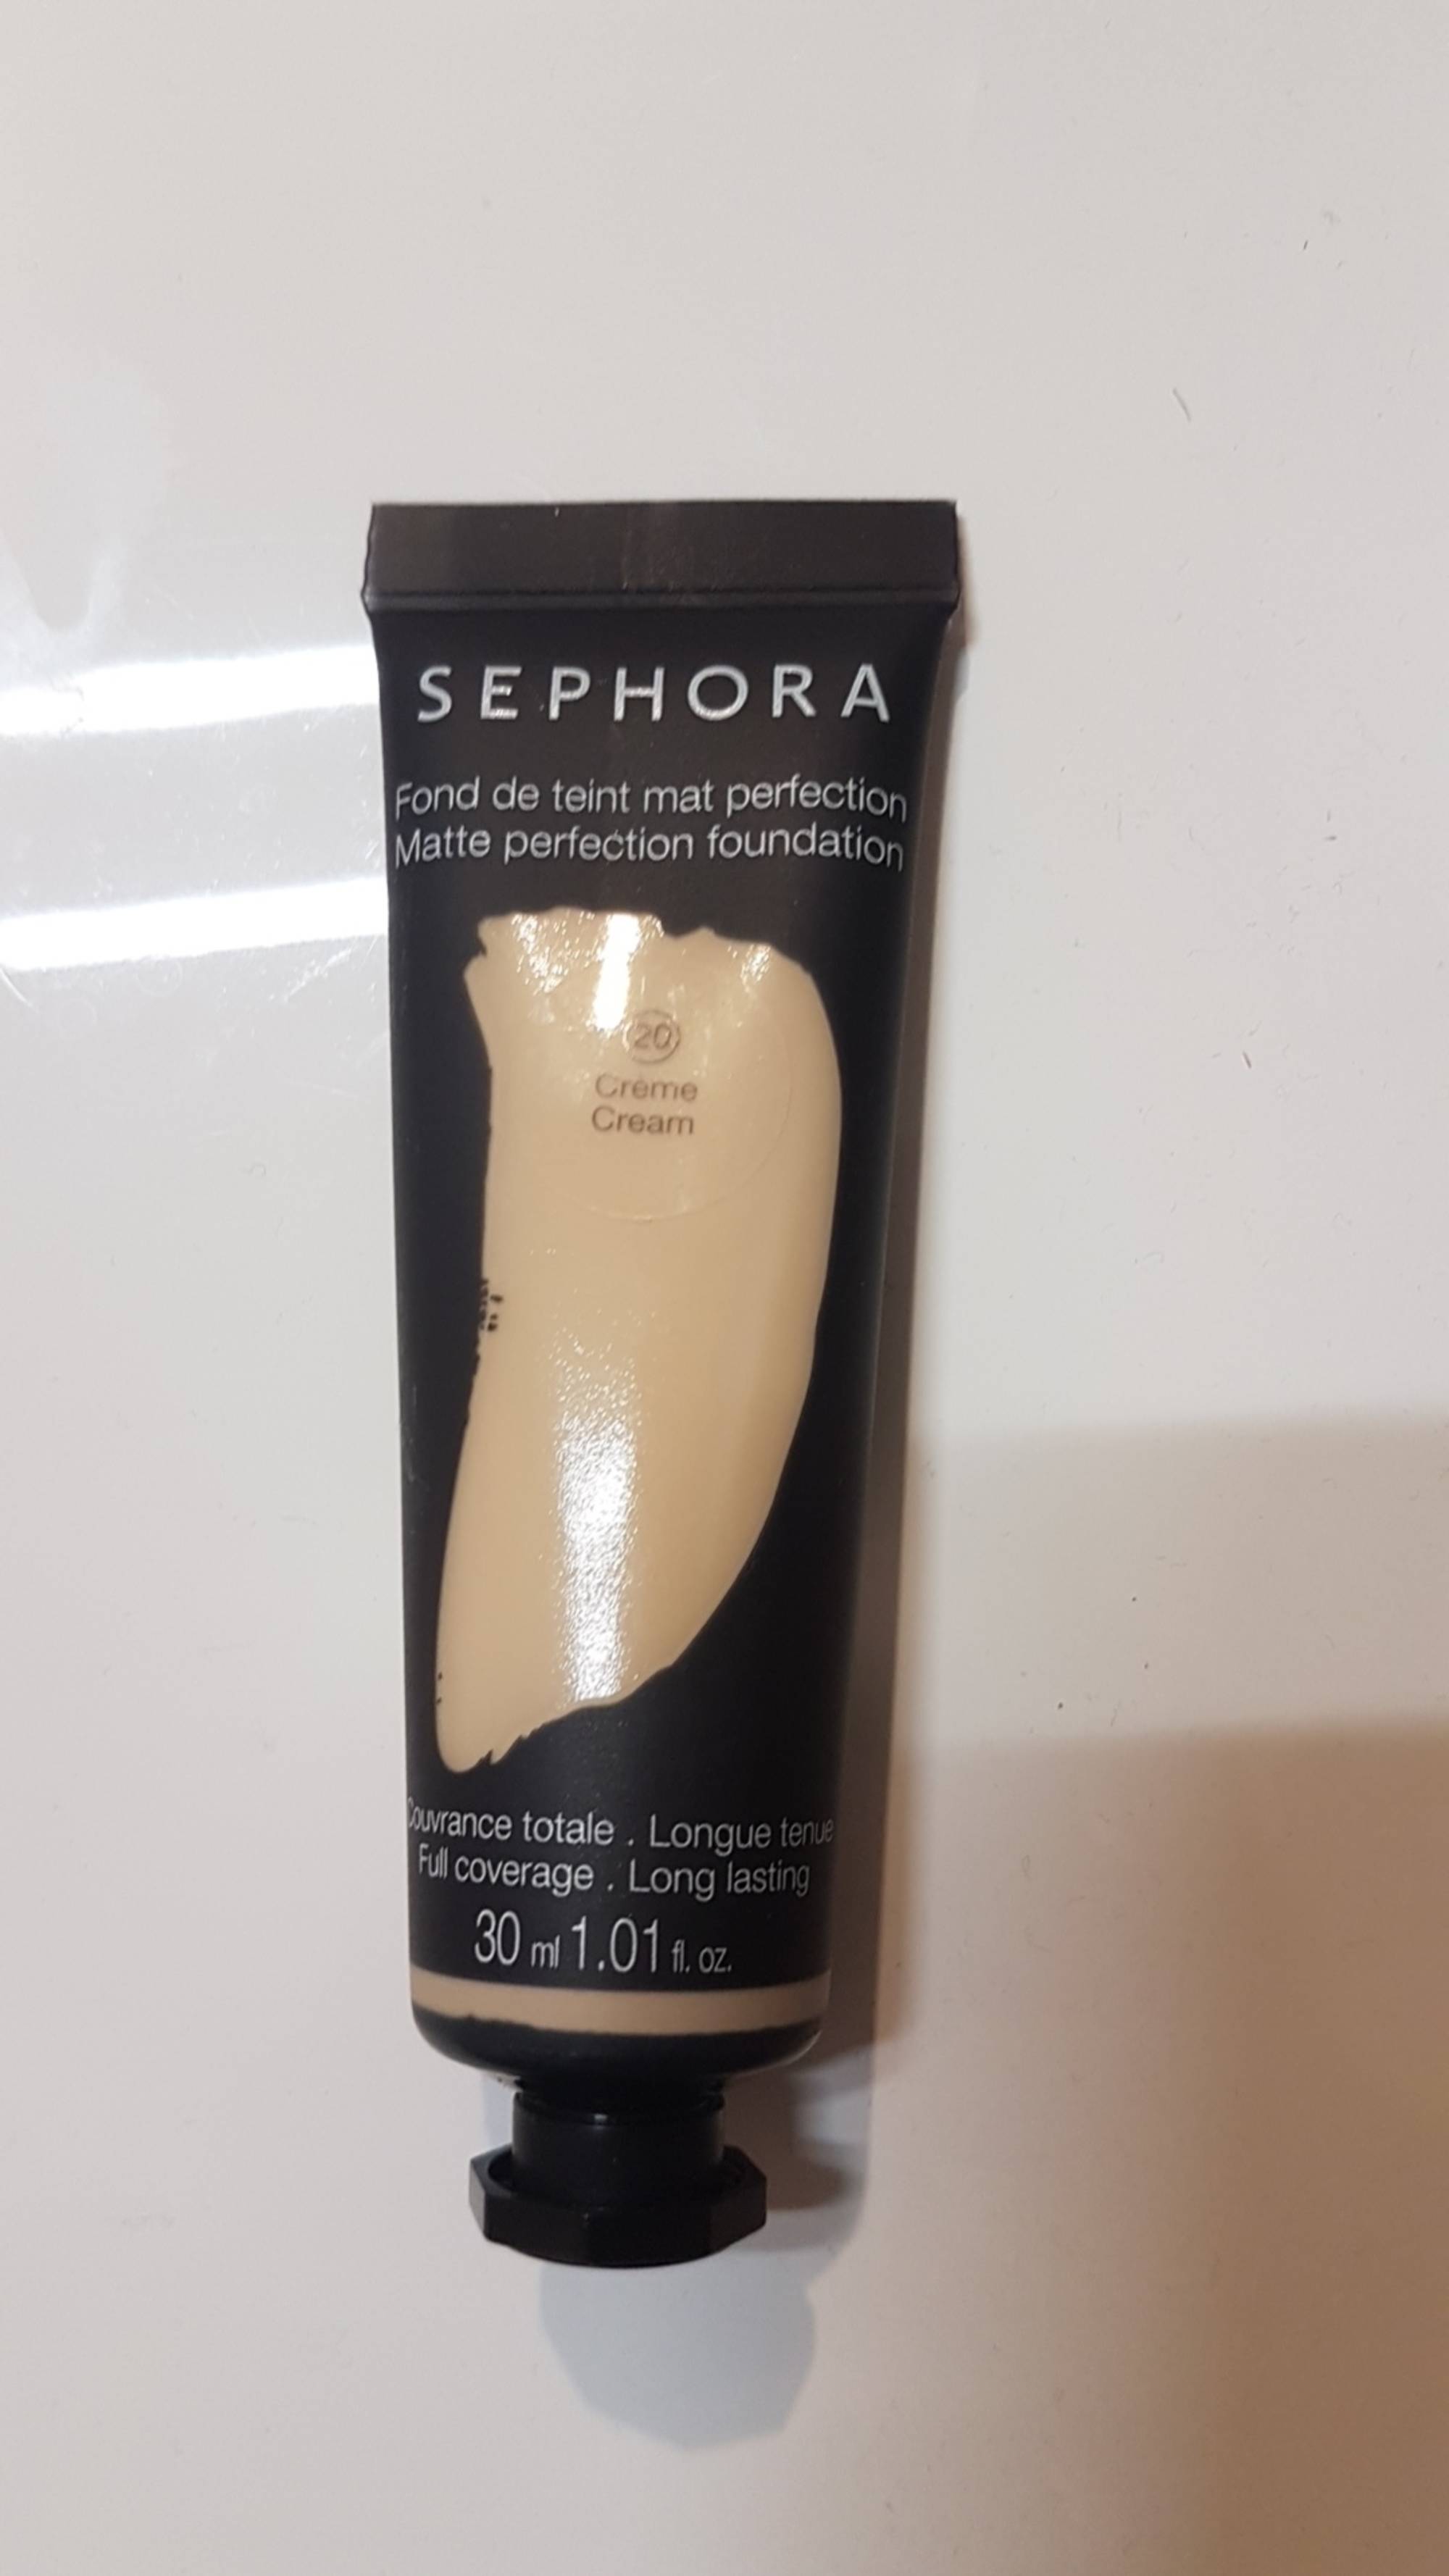 SEPHORA - Fond de teint mat perfection 20 crème